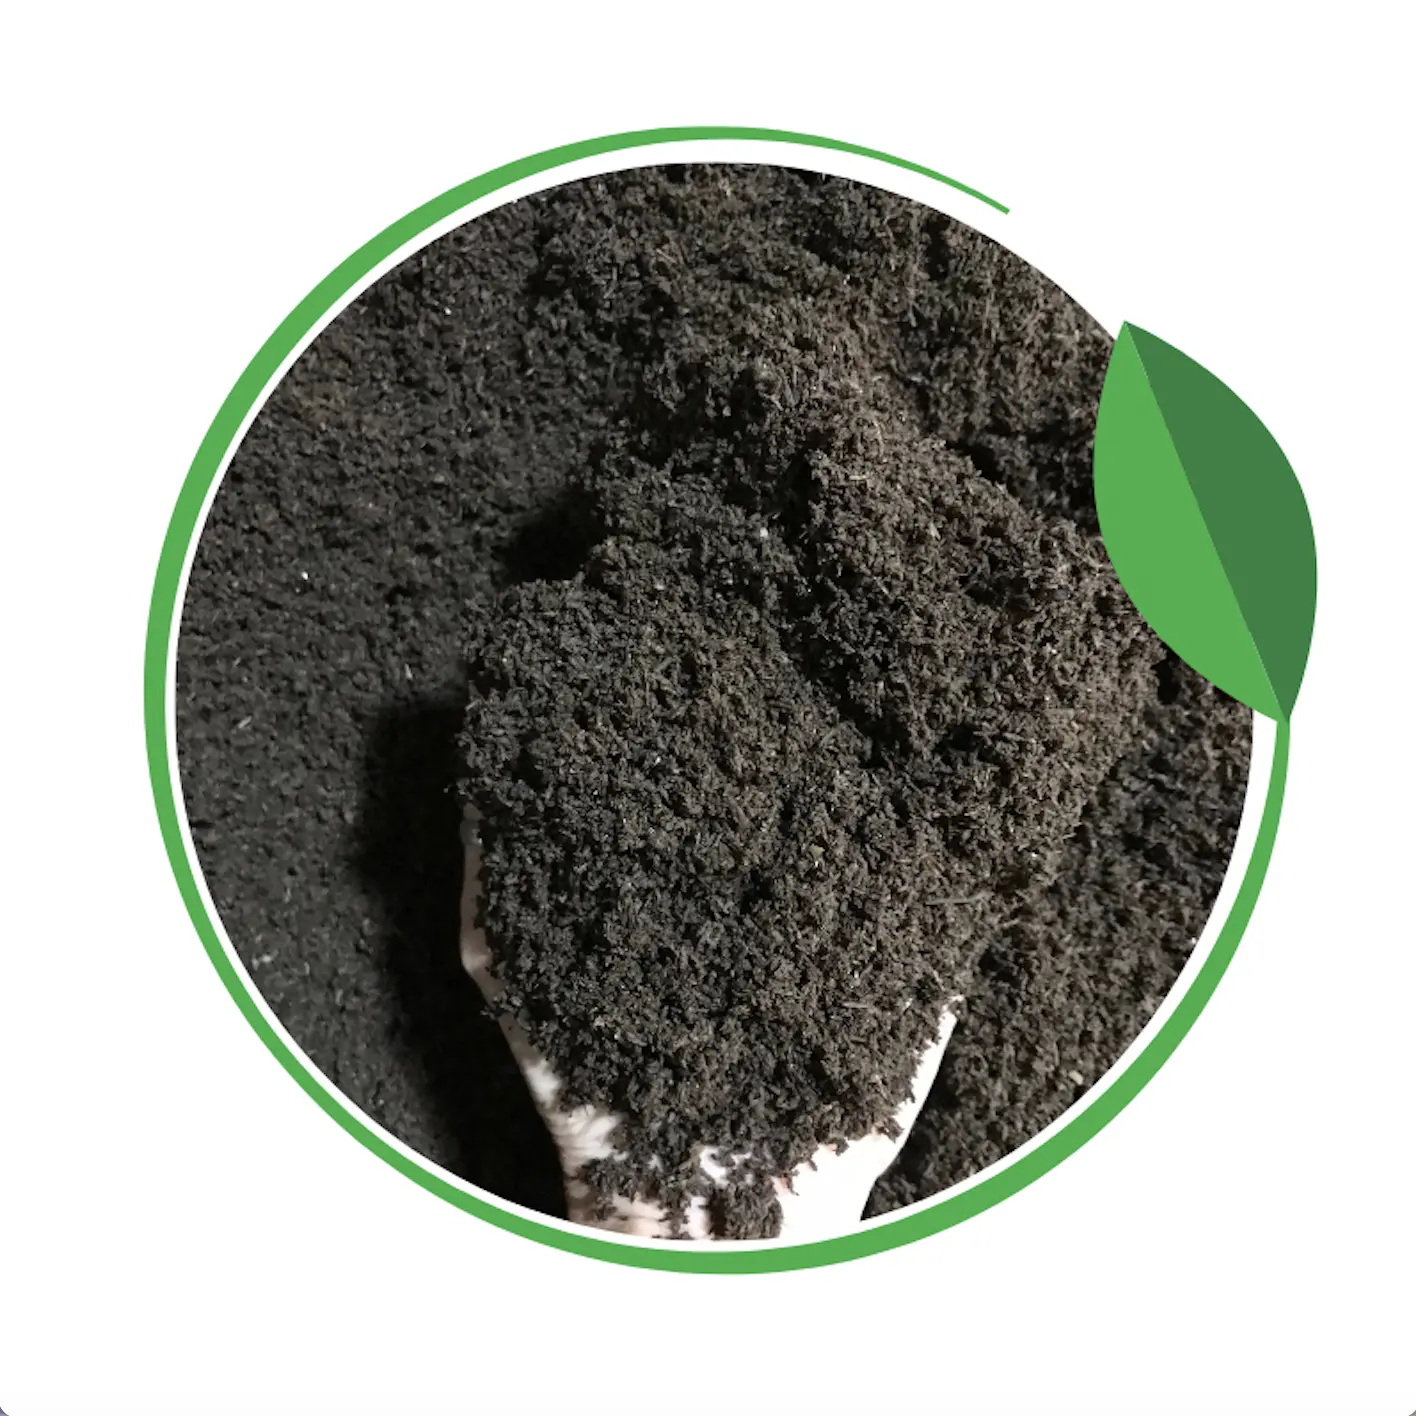 Tingkatkan proses pemupukan alami tanaman Anda 100% Vermicompost organik 20 kg grosir dari Thailand